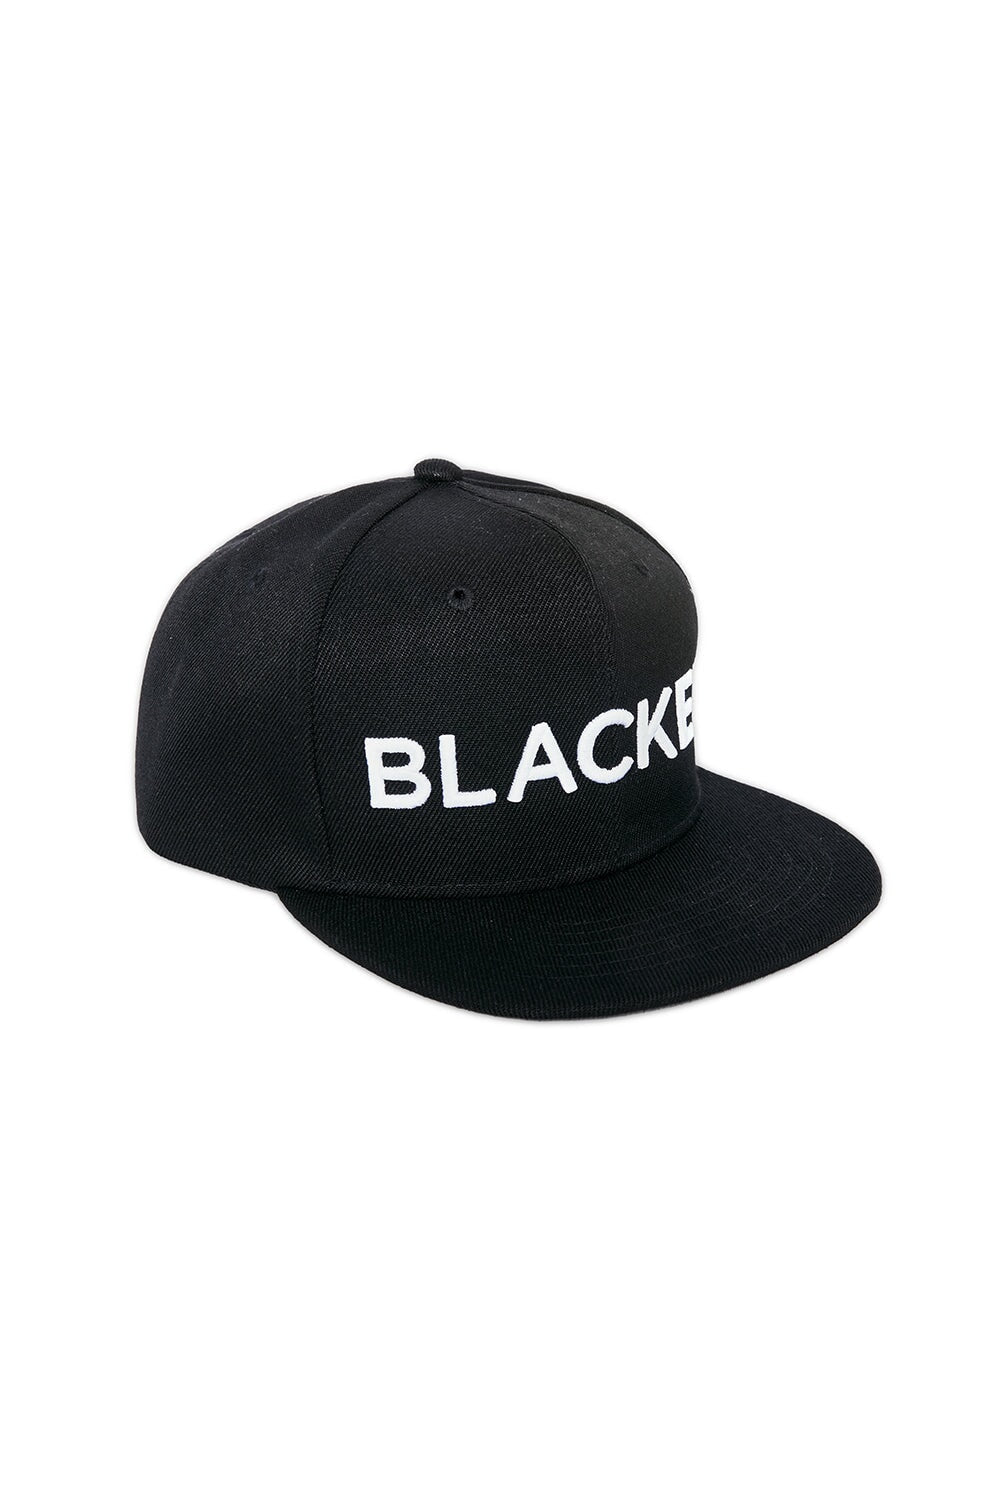 Blacked Snap Back Hats Blacked 